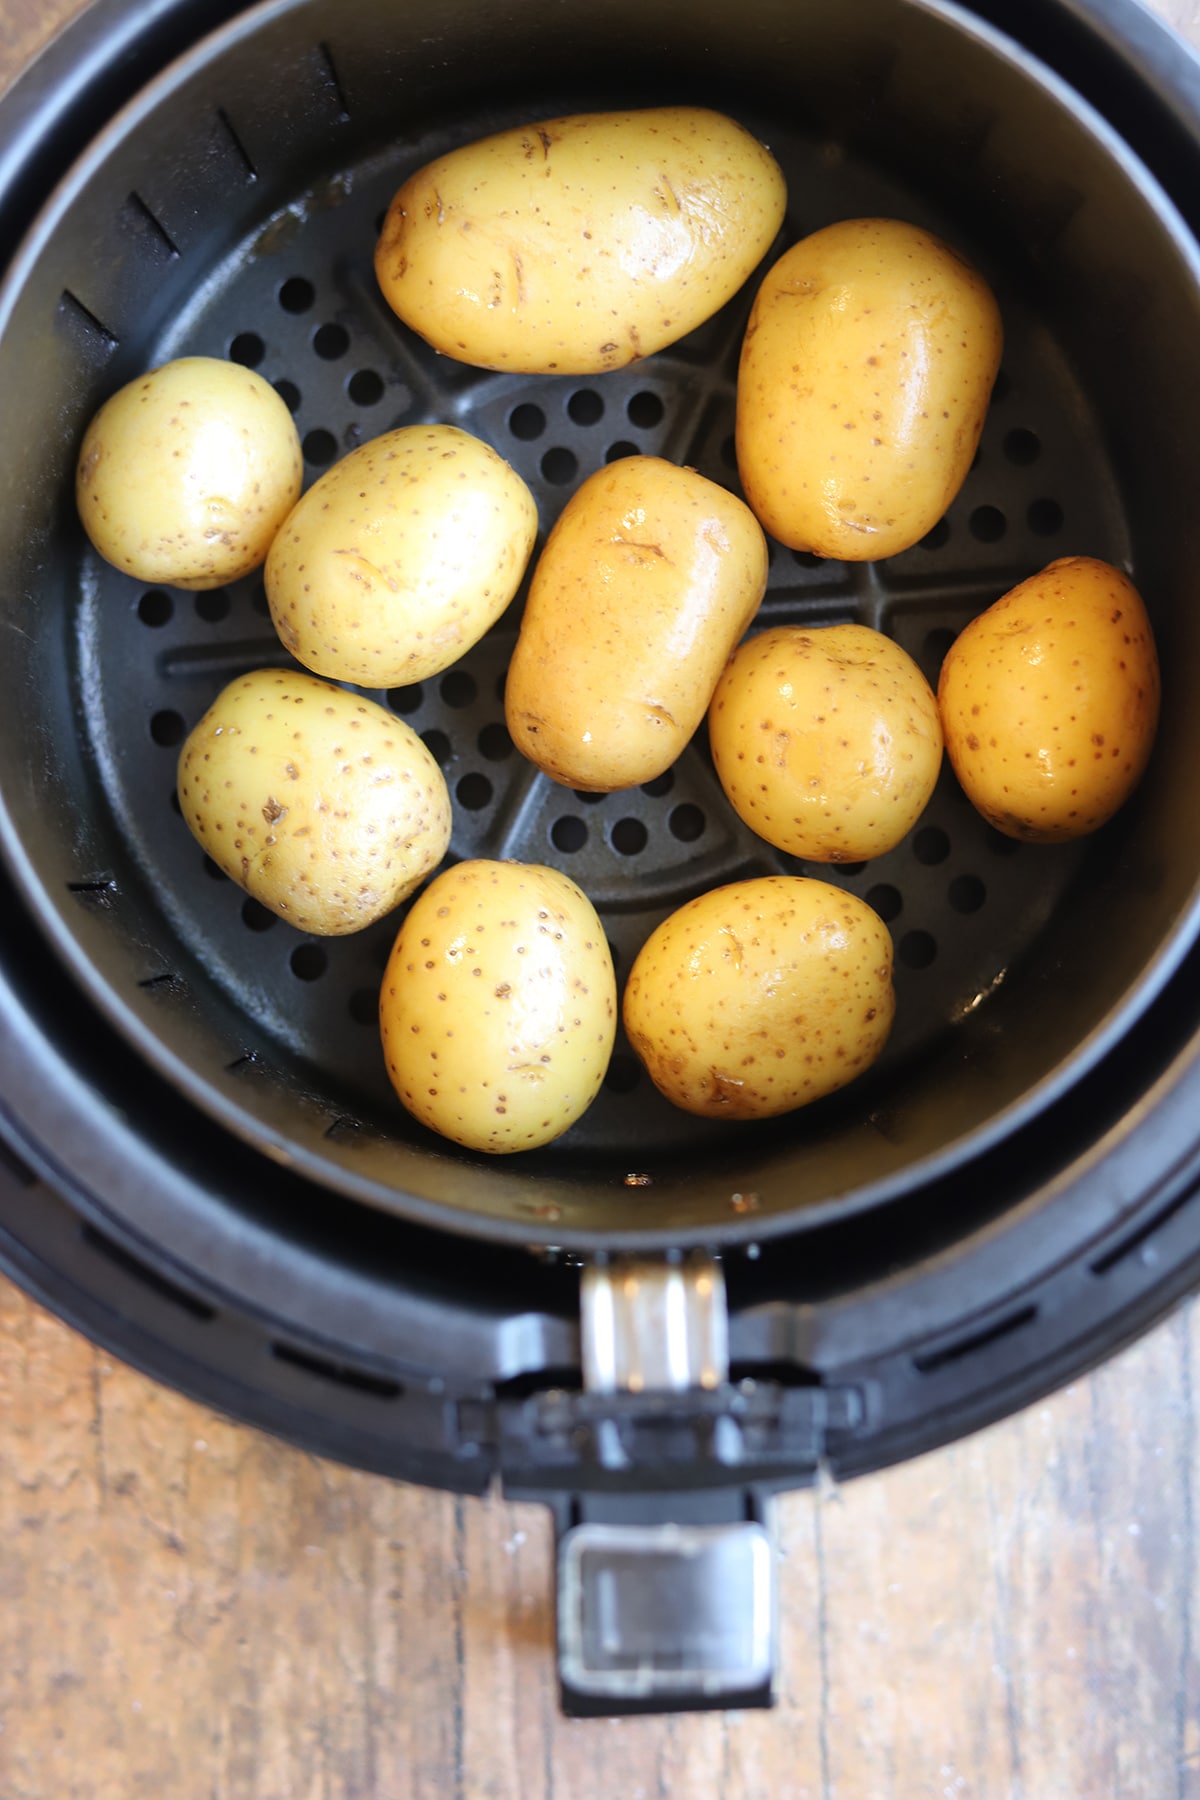 Baby potatoes in air fryer basket.